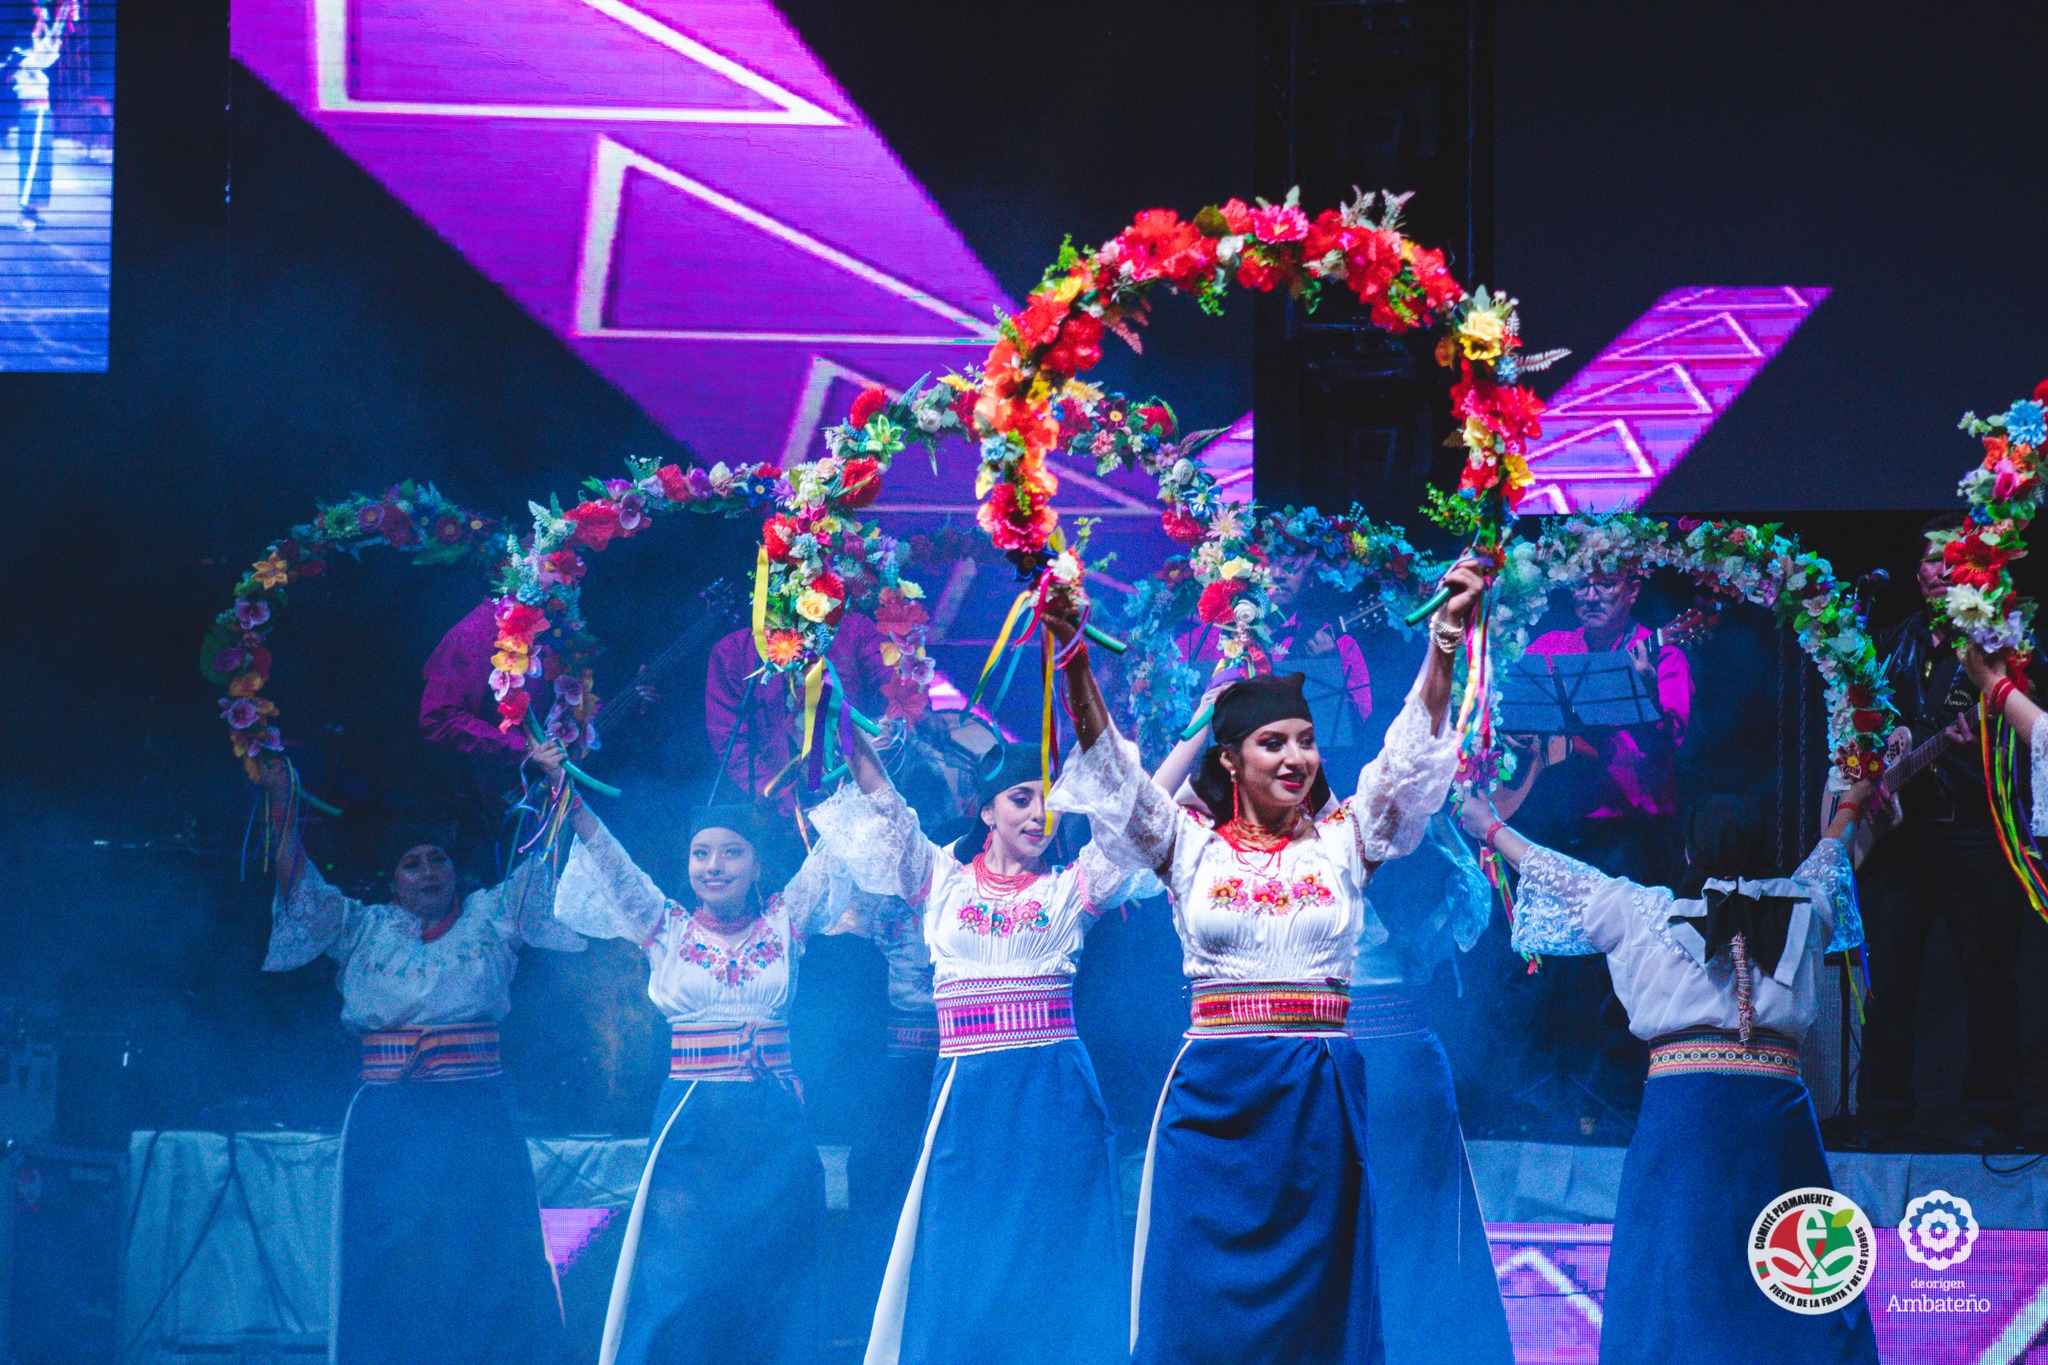 Taller de danza con grupos folclóricos internacionales en Ambato